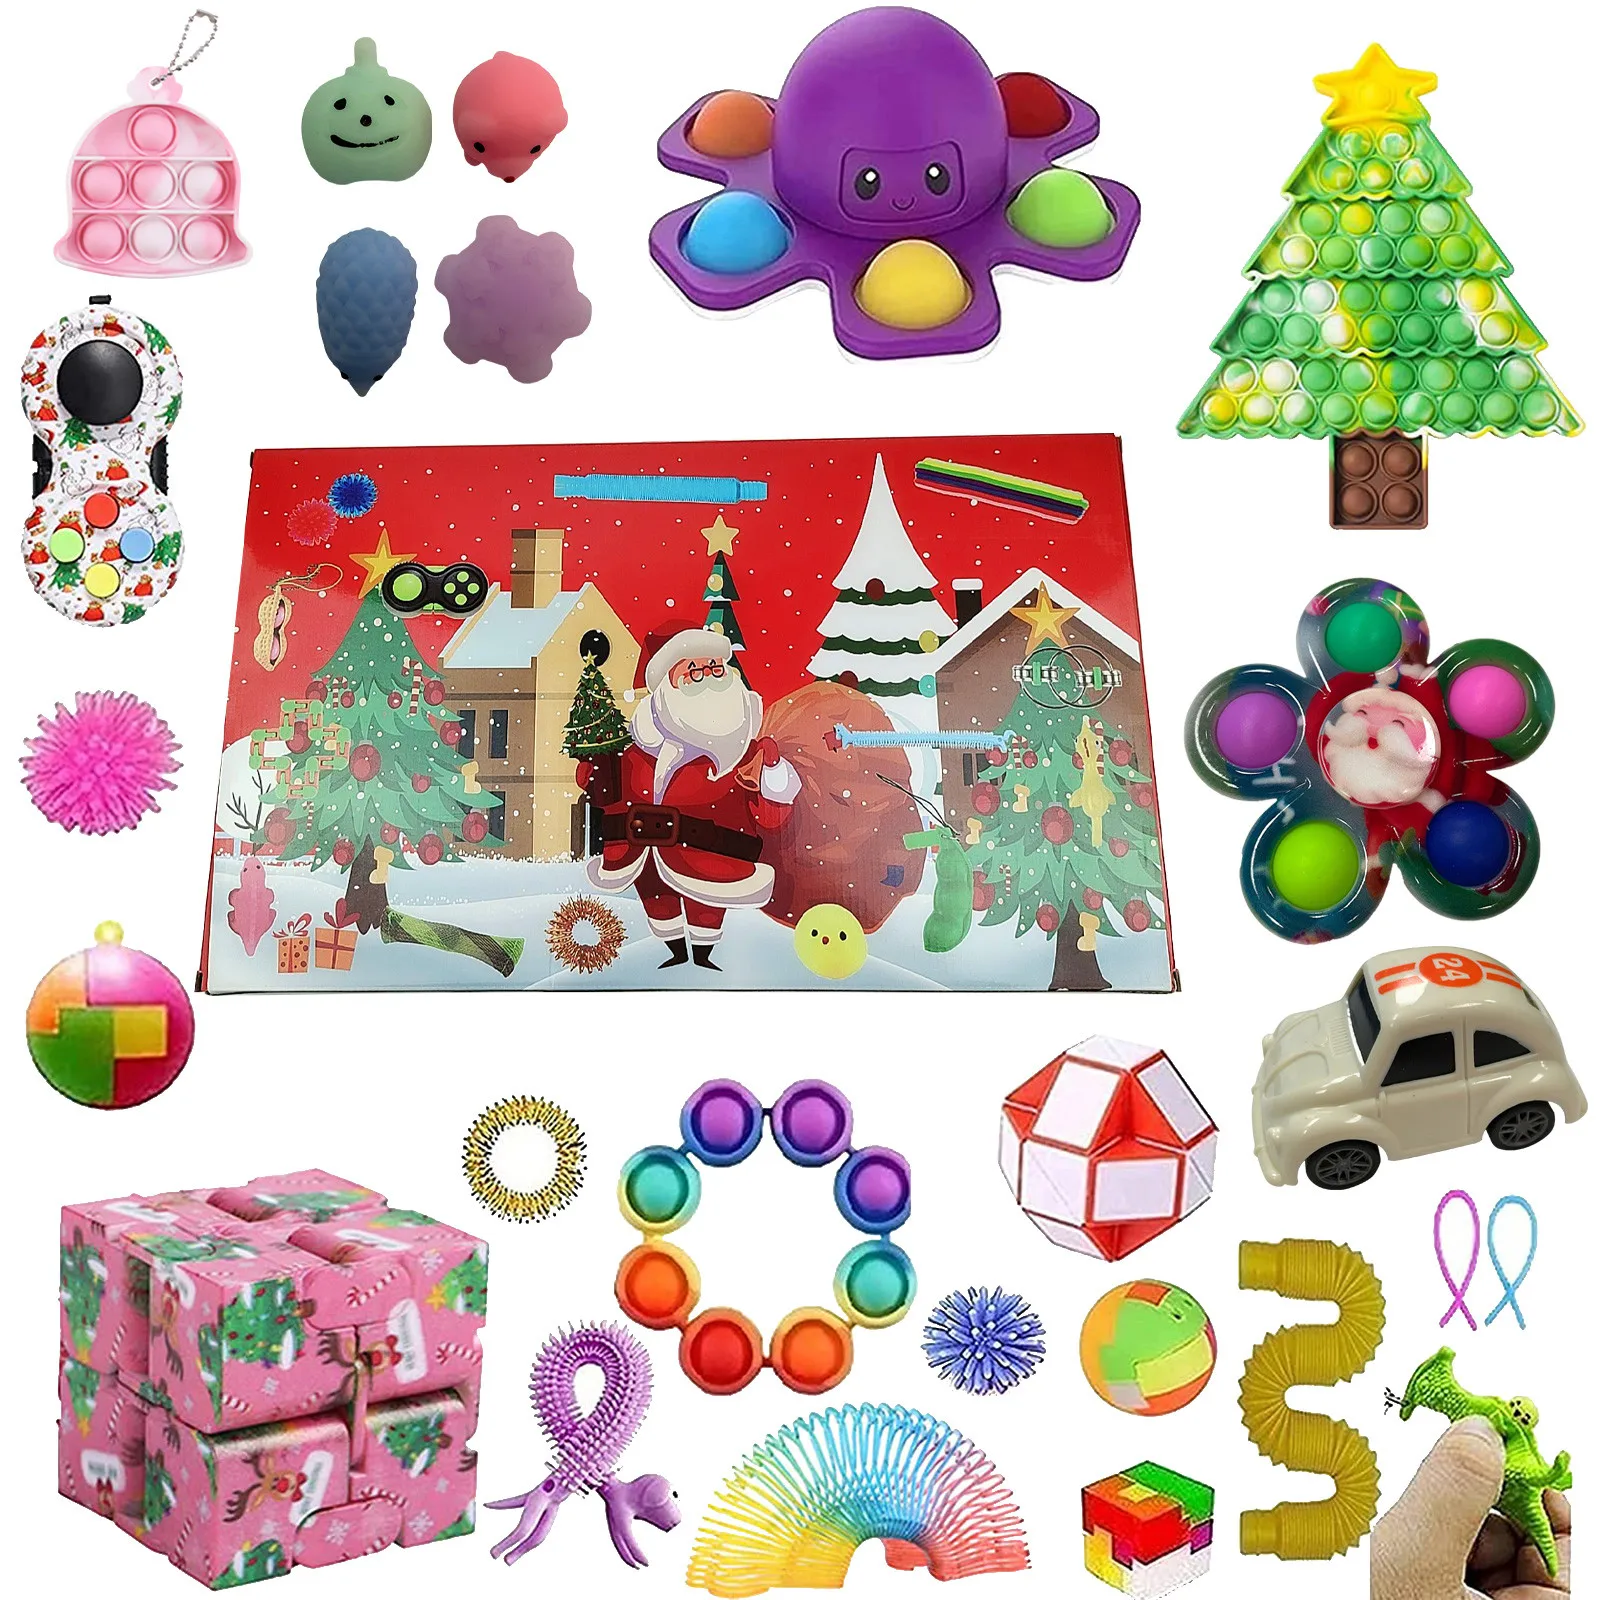 

Набор сенсорных игрушек, детский праздничный календарь с простыми зажимами и пузырьками, с обратным отсчётом, для Рождества